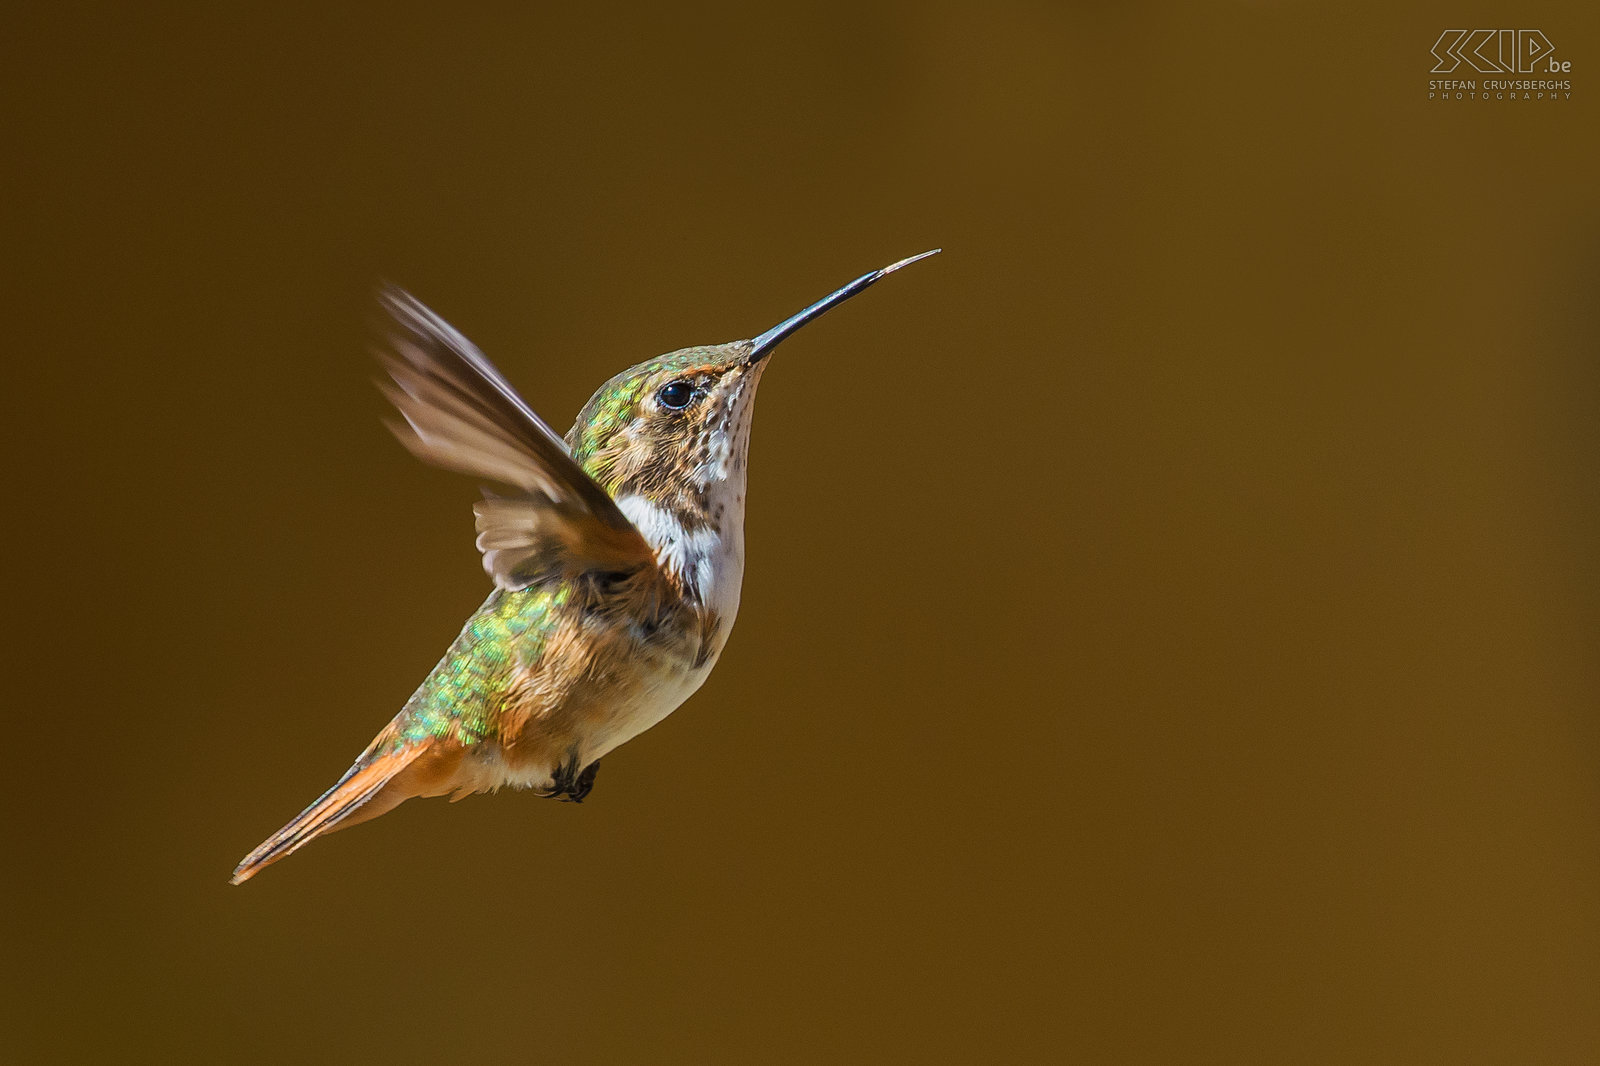 San Gerardo de Dota - Fonkelende kolibrie De fonkelende kolibrie (scintillant hummingbird, selasphorus Scintilla) is een van de kleinste kolibries (6-8cm) die alleen voorkomt in de bergen van Costa Rica. Kolibries hebben een zeer hoog metabolisme en ze drinken nectar uit verschillende kleine bloemen. Ze zweven in de lucht en kunnen hun vleugels ontzettend snel bewegen, meestal rond de 50 keer per seconde, maar soms tot wel 200 keer per seconde. Ze hebben lange en smalle snavels  en drinken met hun tong.<br />
<br />
 Stefan Cruysberghs